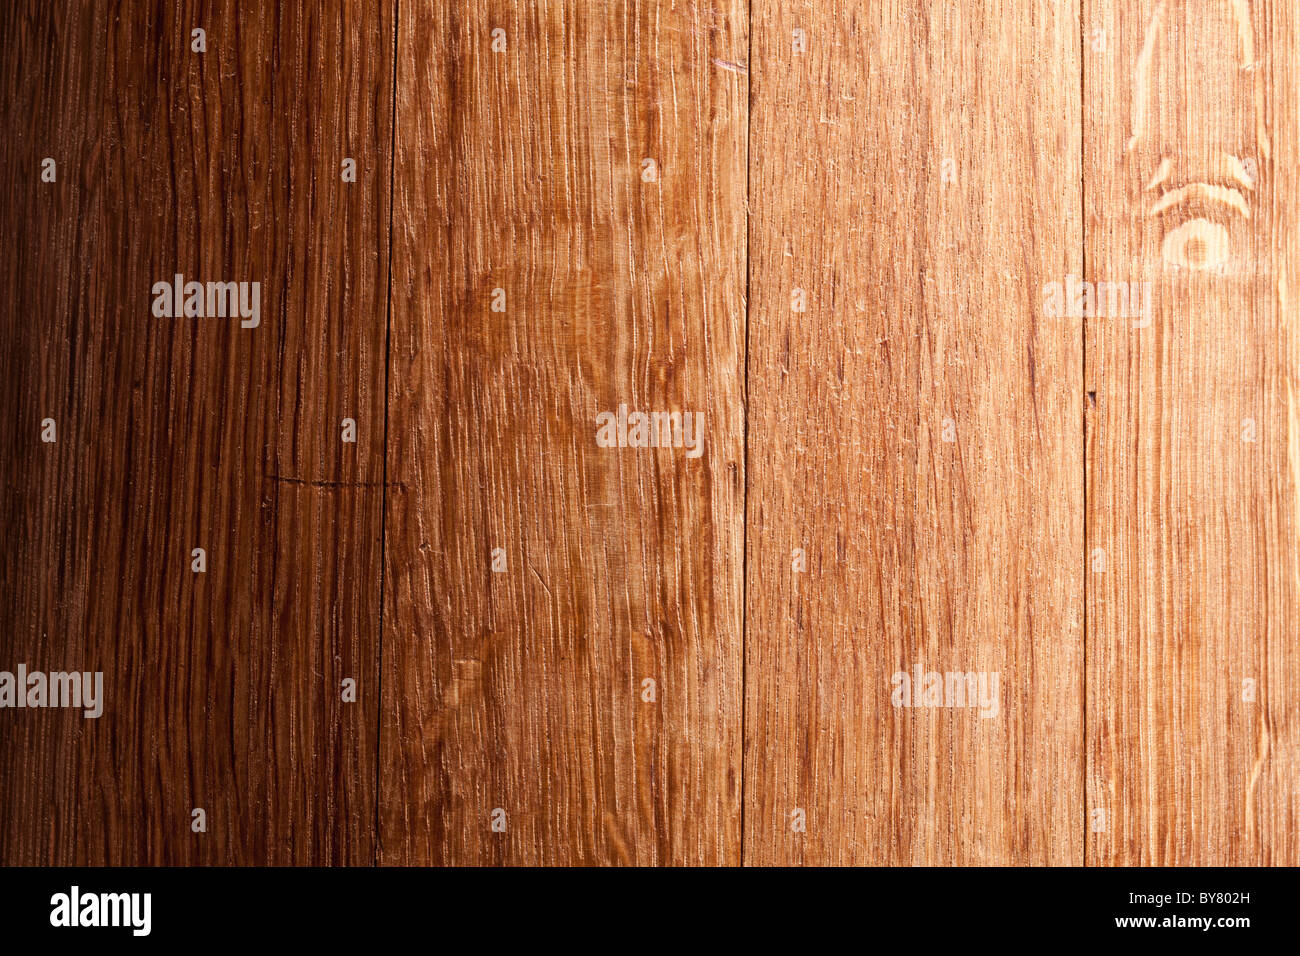 Texture di immagini di vecchie tavole di legno. Foto Stock